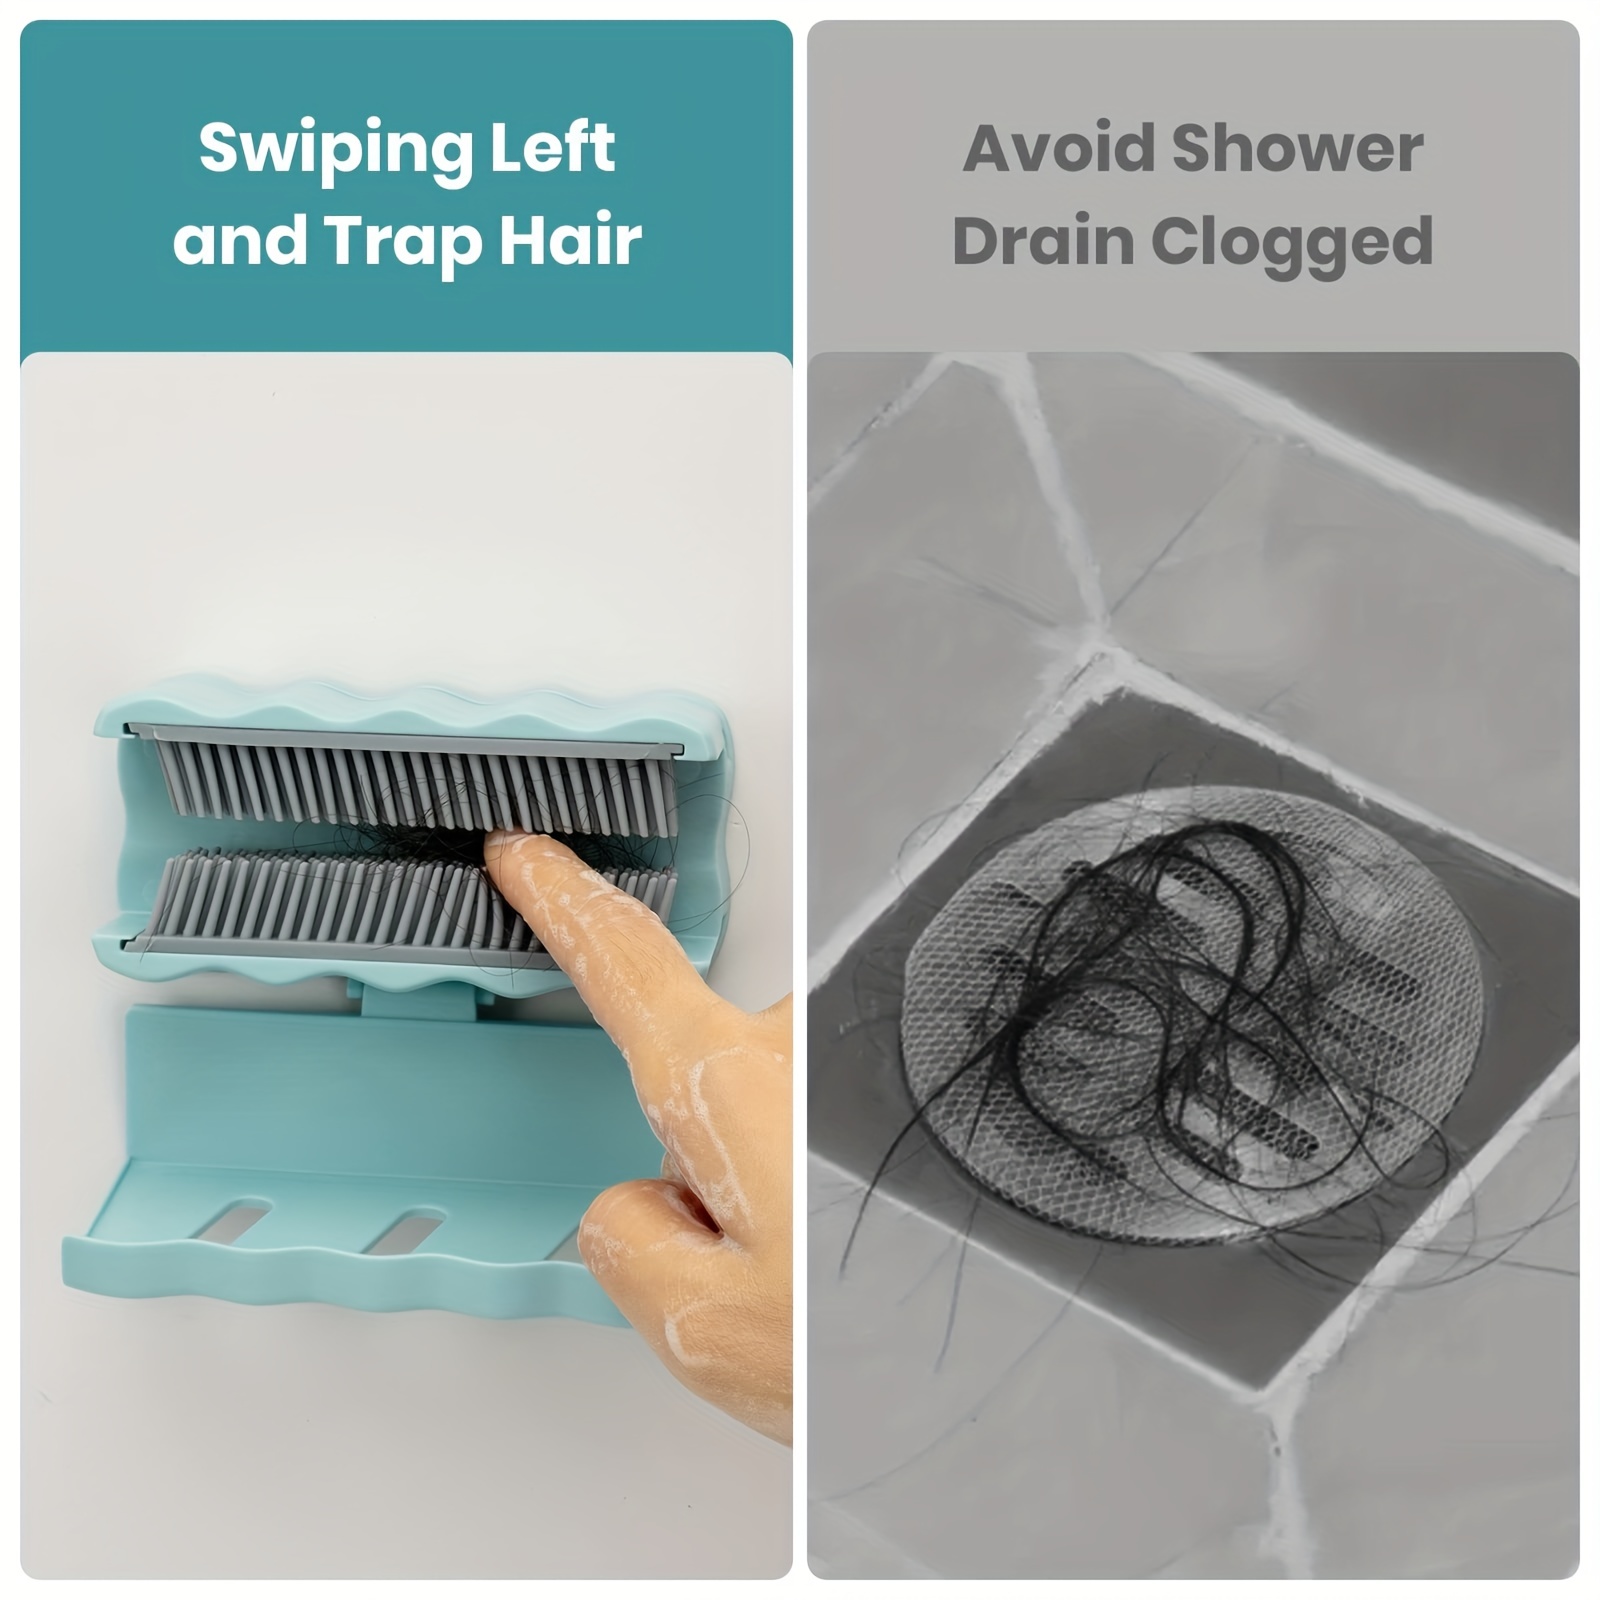 Hair Catcher Shower Wall Hair Trap Hair Collector For Bathroom Bathtub  Kitchen